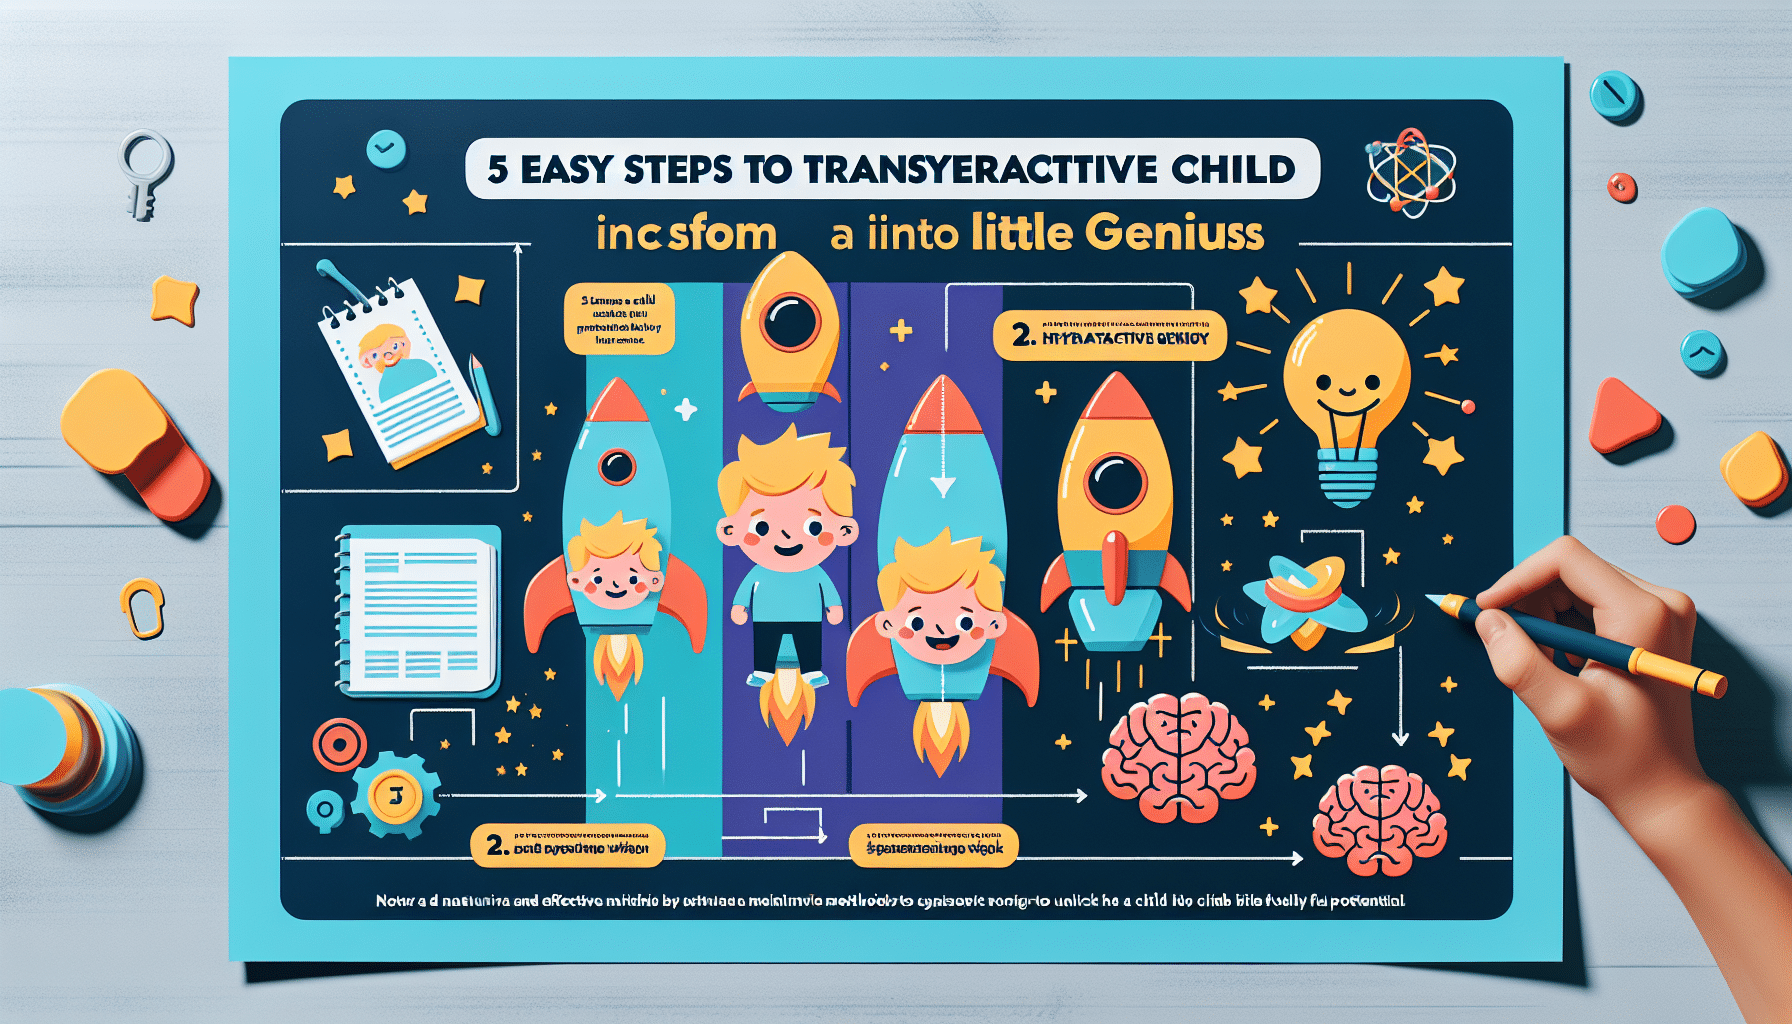 découvrez comment aider votre enfant hyperactif à exprimer tout son potentiel avec notre méthode en 5 étapes simples pour le transformer en petit génie.